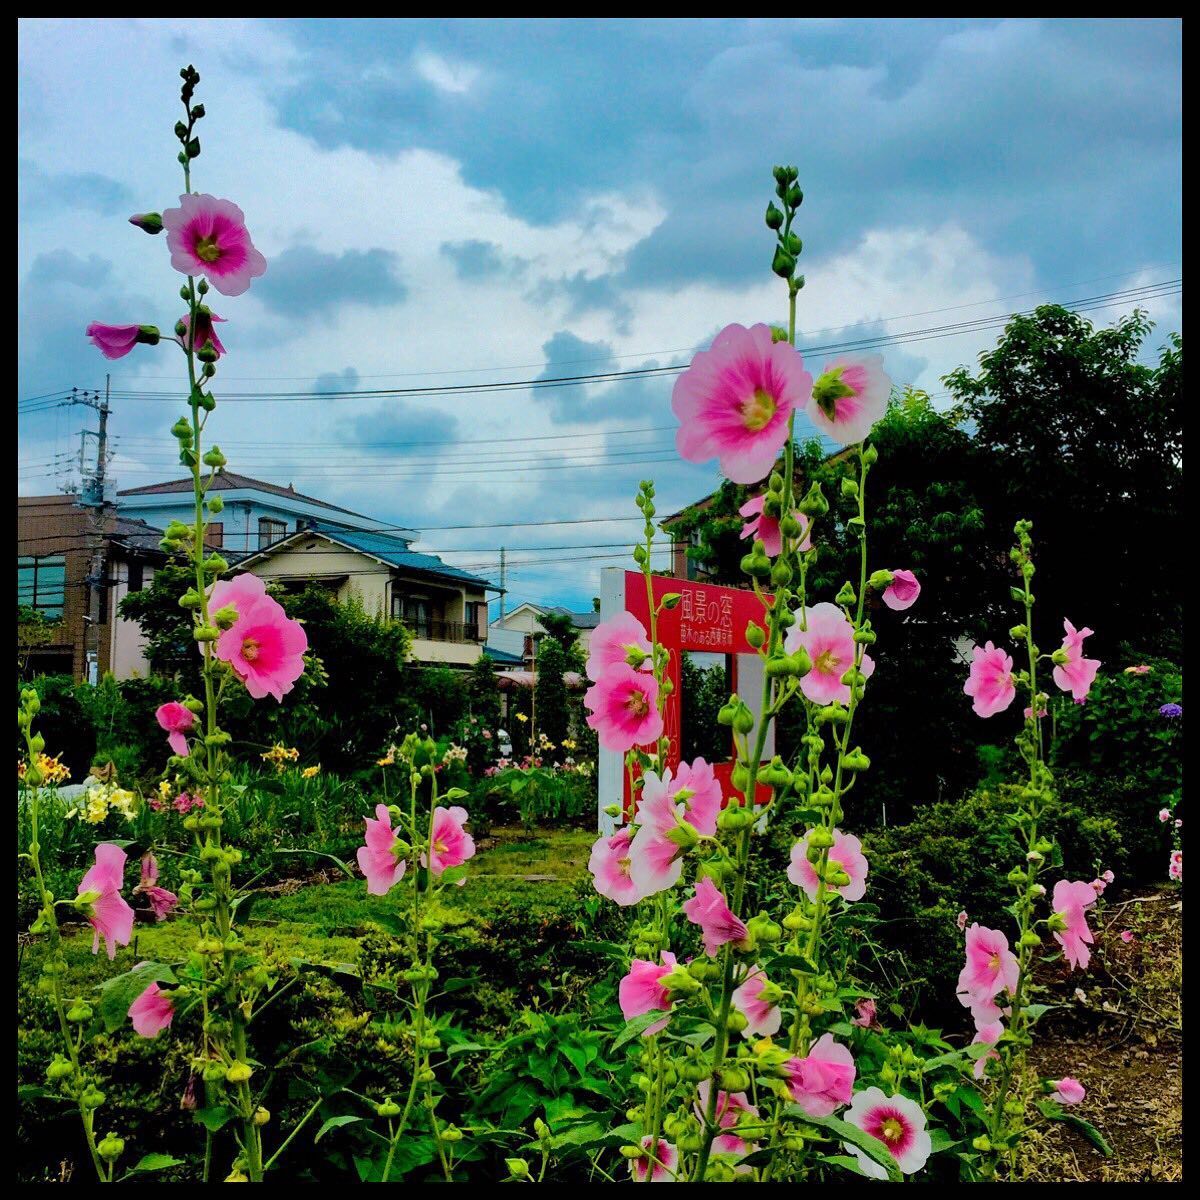 6月27日 日 梅雨葵の咲く風景 毎日jogjob日誌 By東良美季